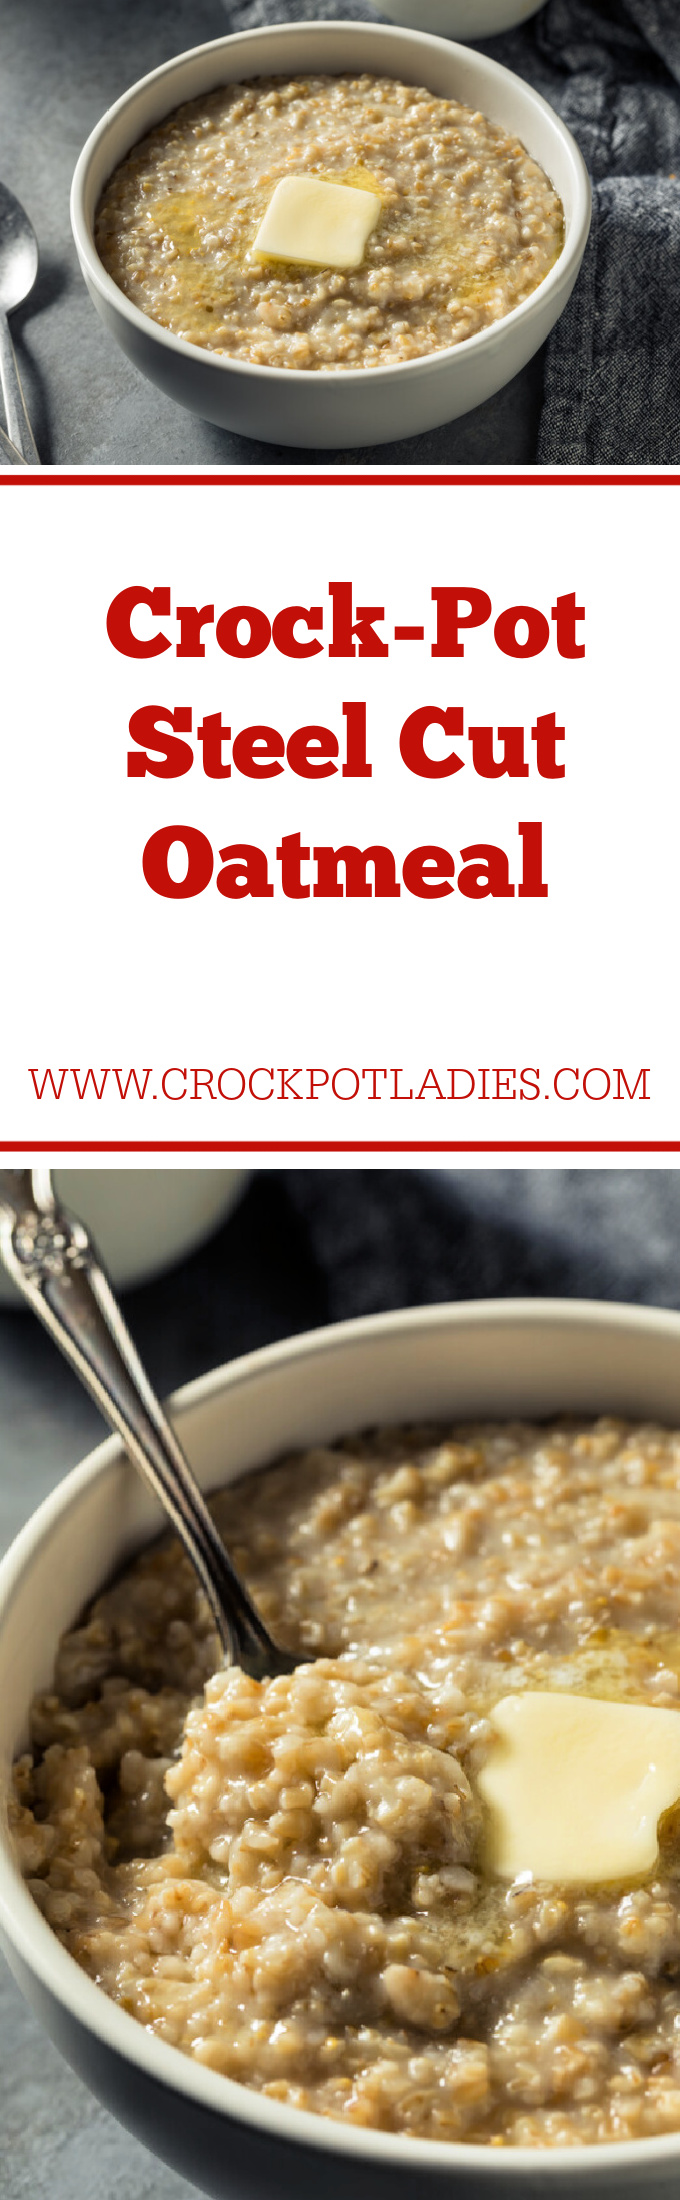 Crock-Pot Steel Cut Oatmeal